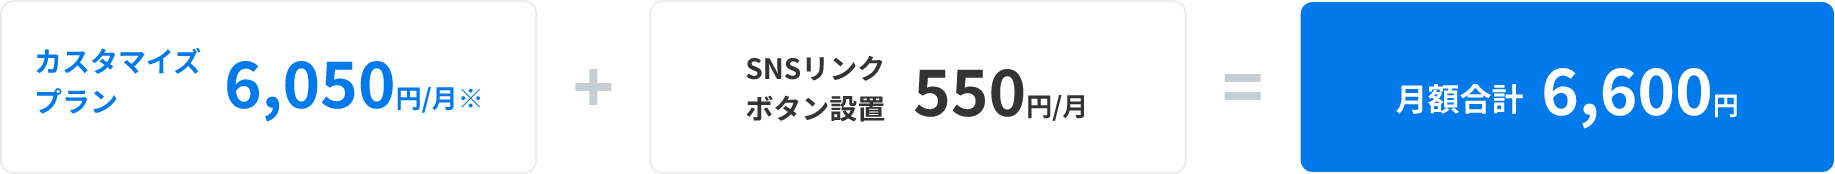 カスタマイズプラン6,050円/月(※)+SNSリンクボタン設置550円/月=月額合計6,600円